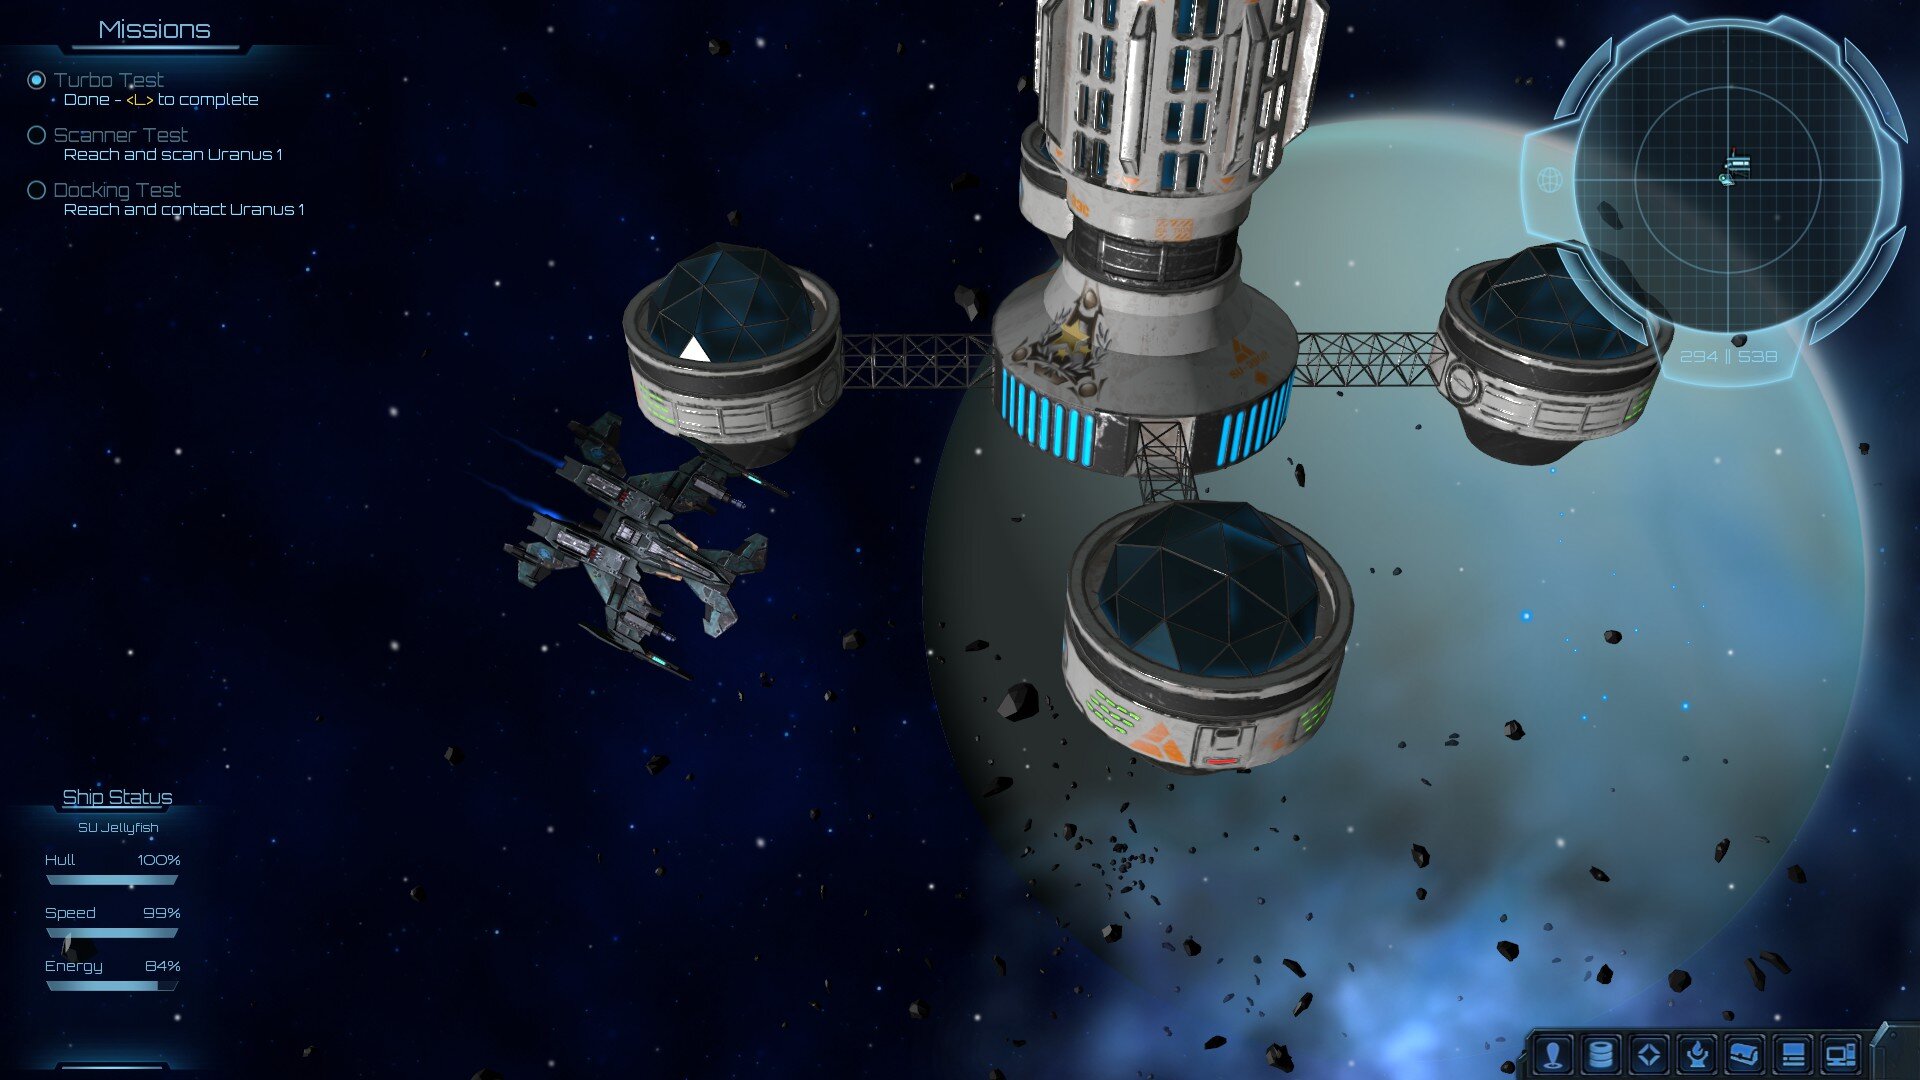 Forsaken Portals game screenshot, still in Earthy's solar system